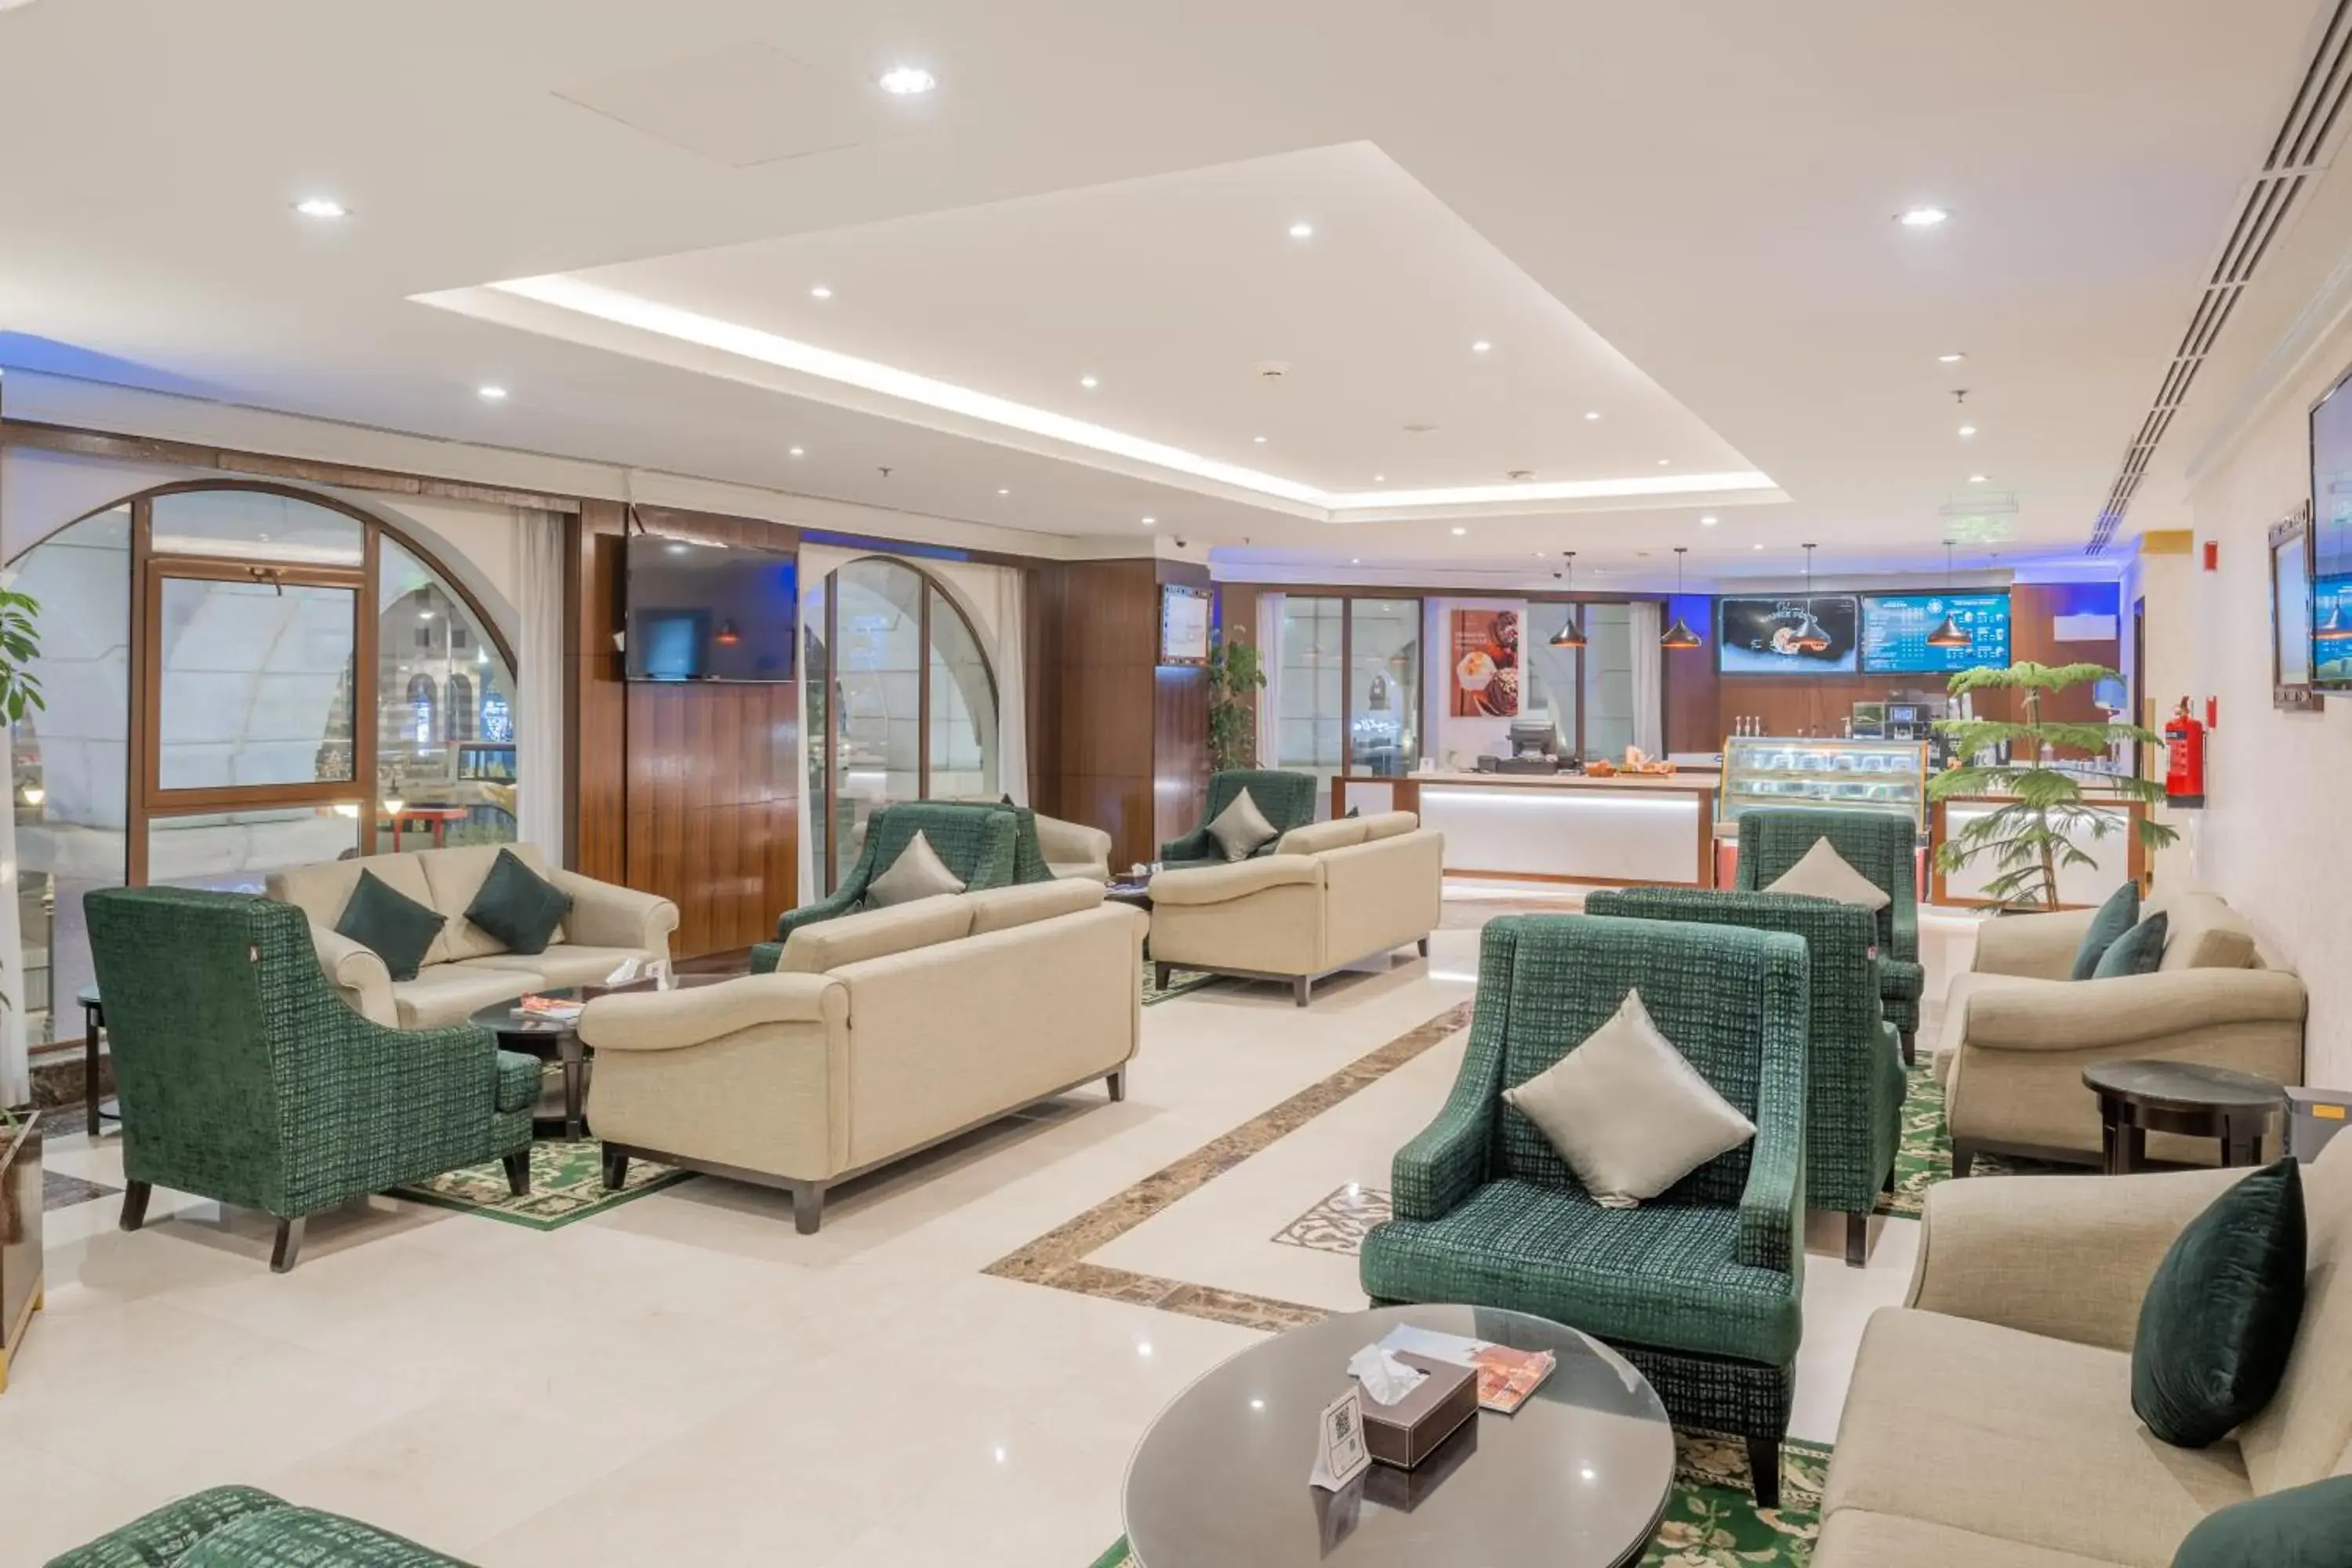 Coffee/tea facilities, Lobby/Reception in Taiba Madinah Hotel